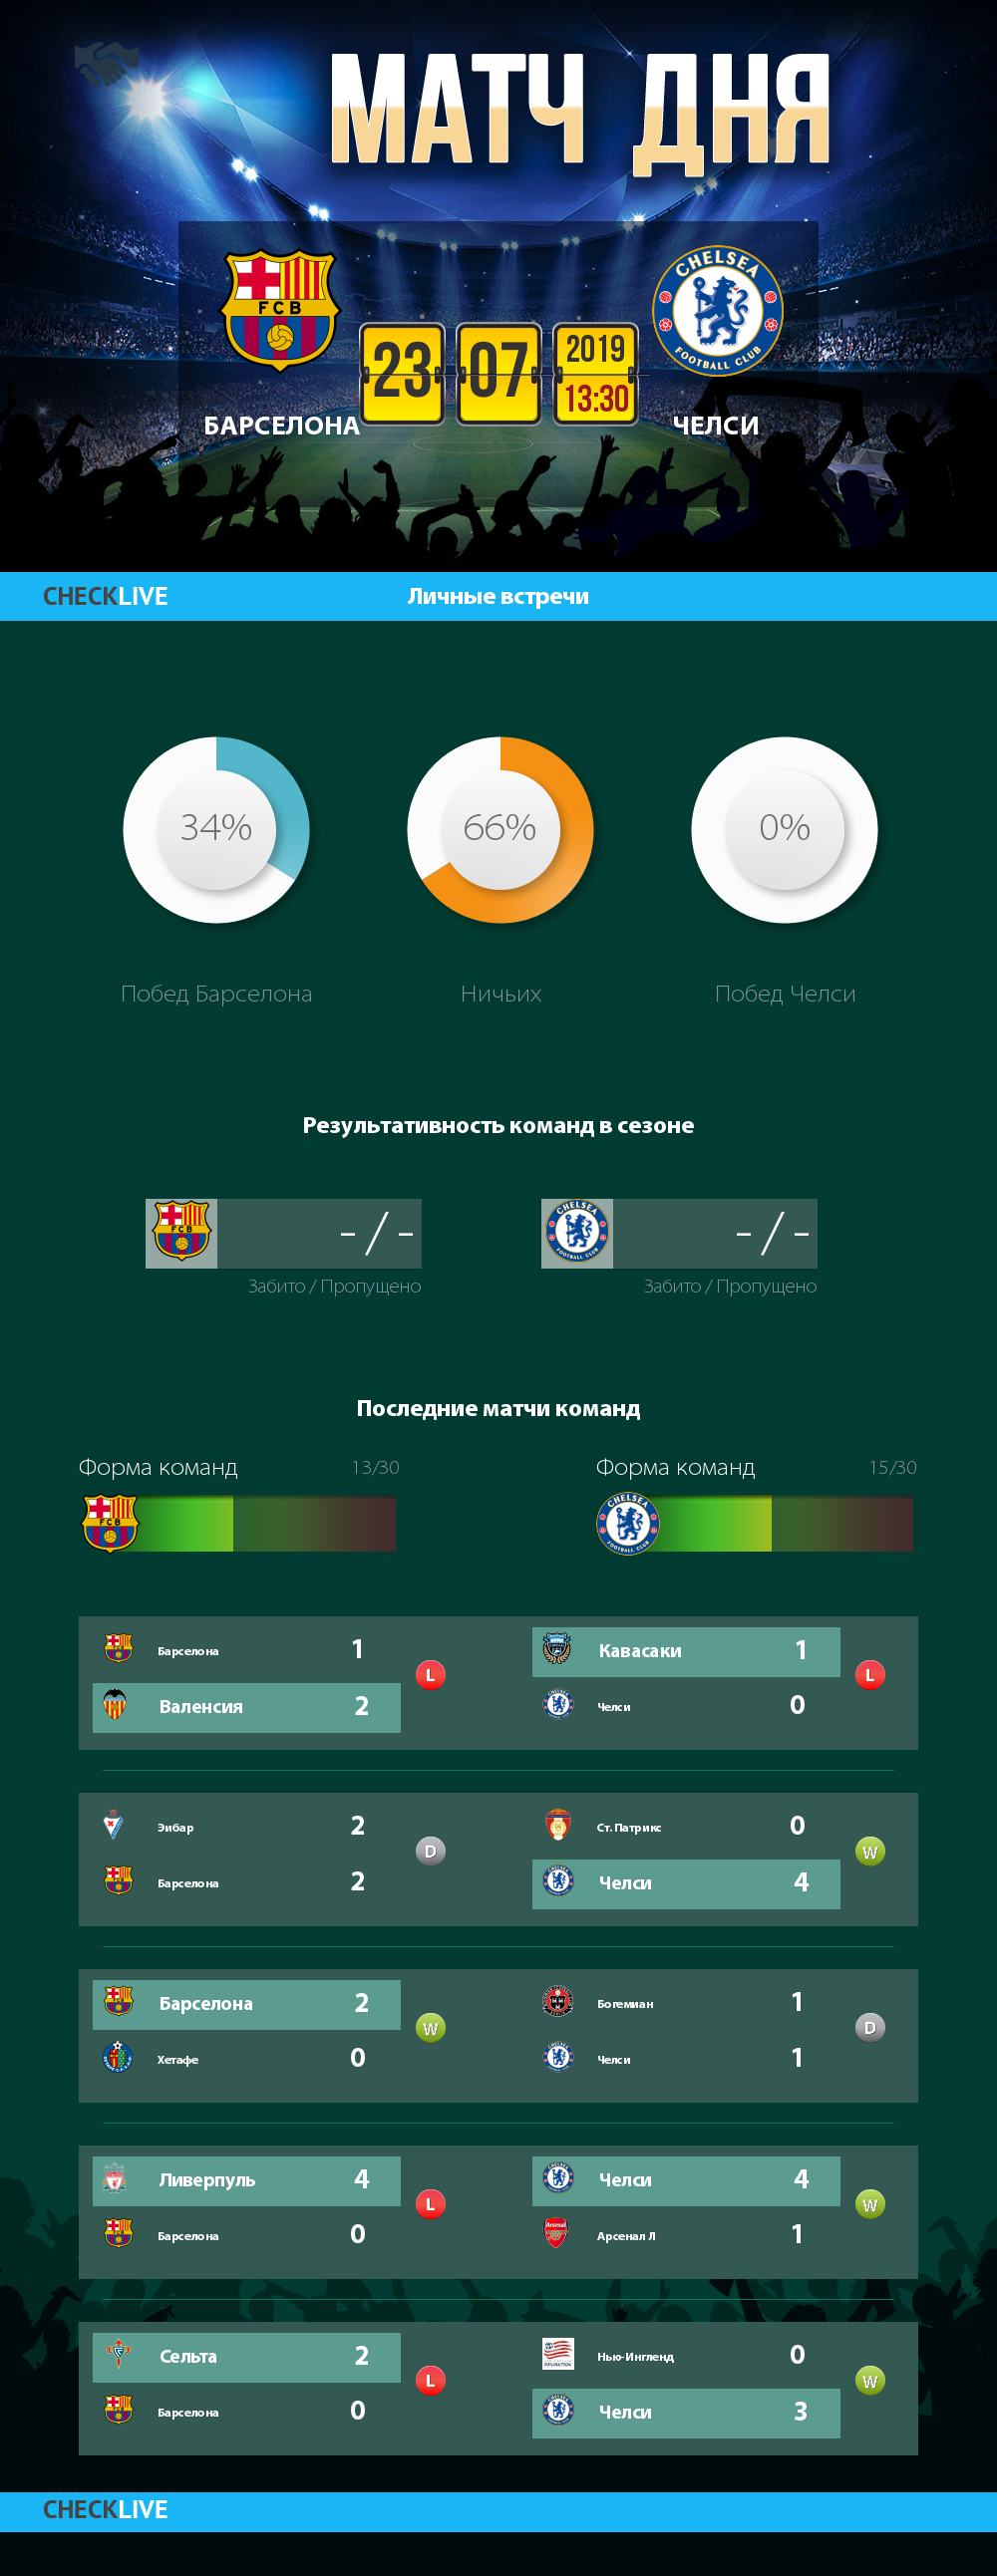 Инфографика Барселона и Челси матч дня 23.07.2019